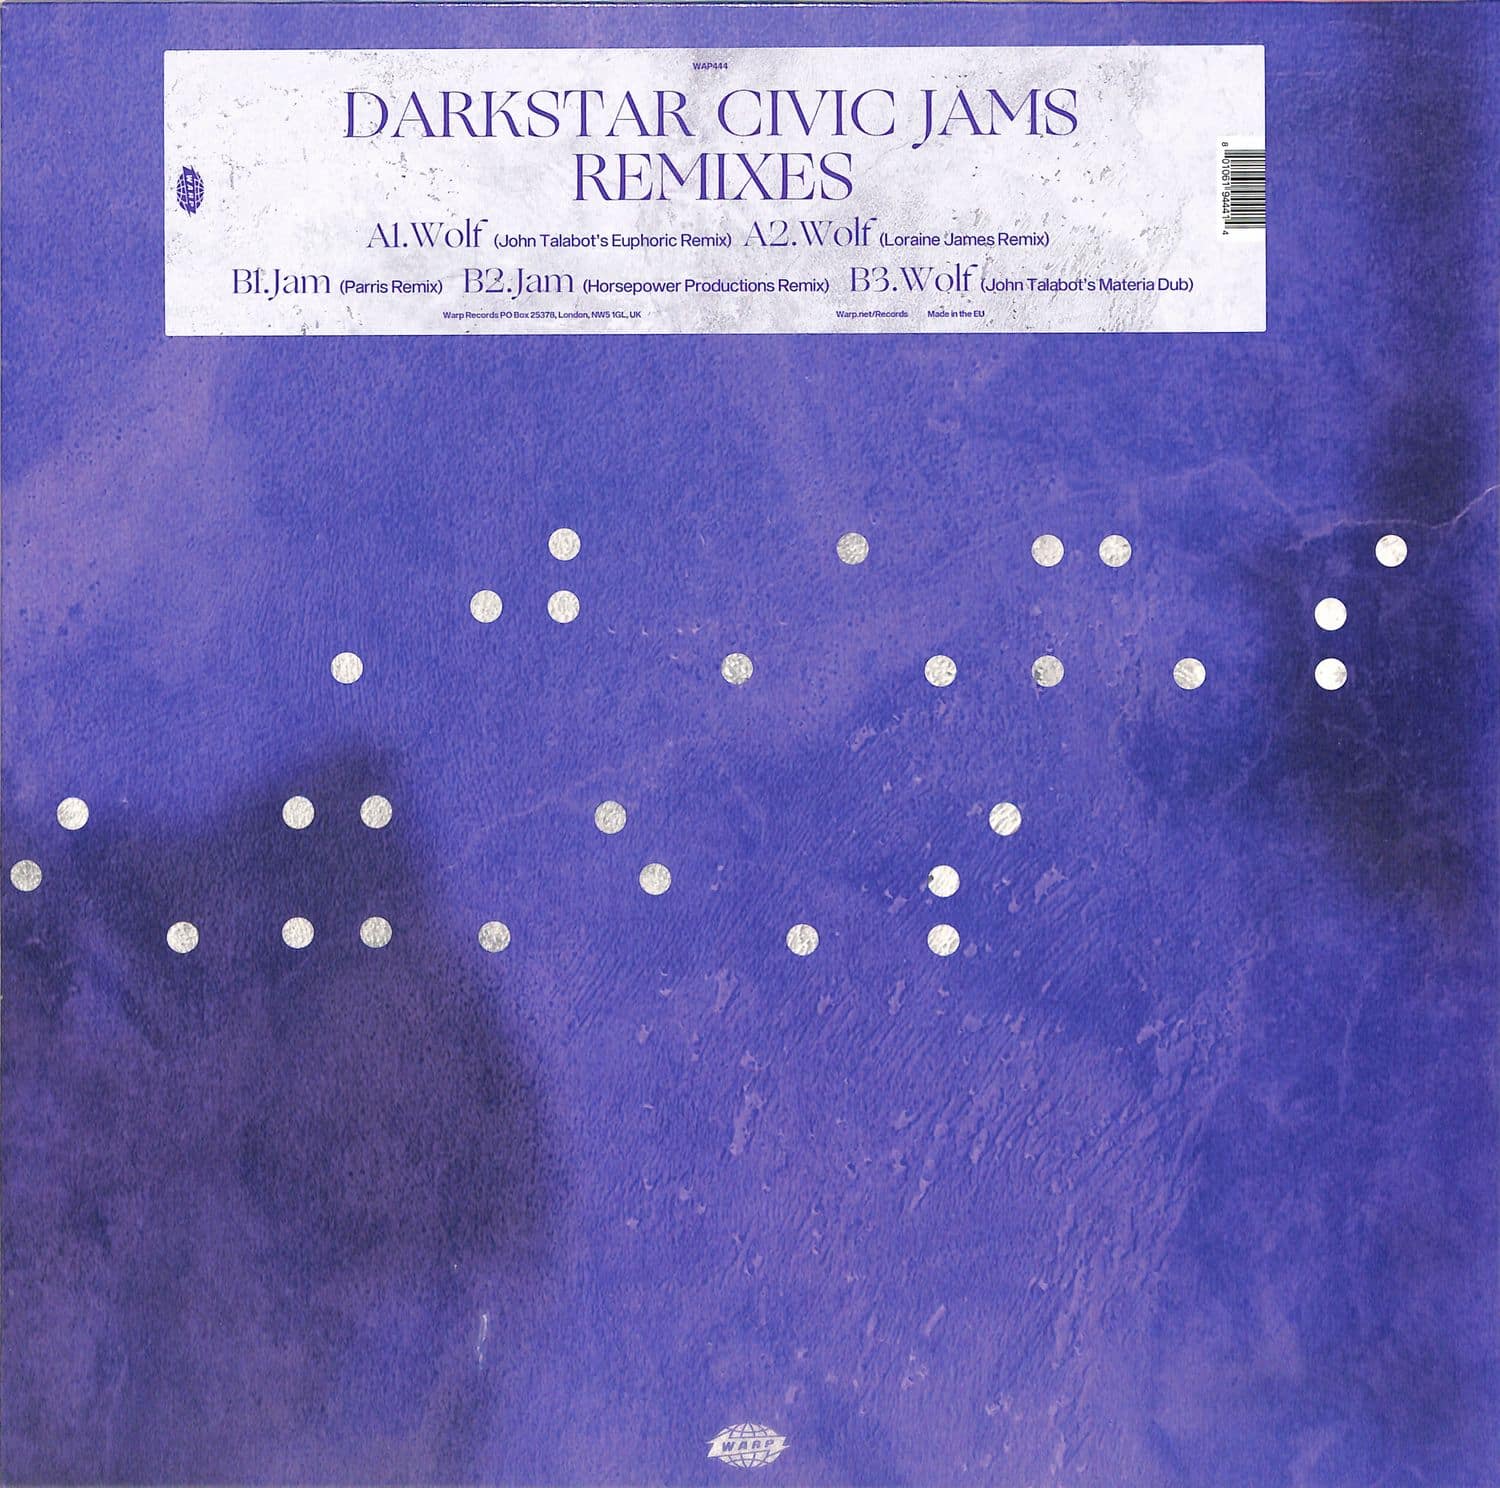 Darkstar - CIVIC JAMS REMIXES 